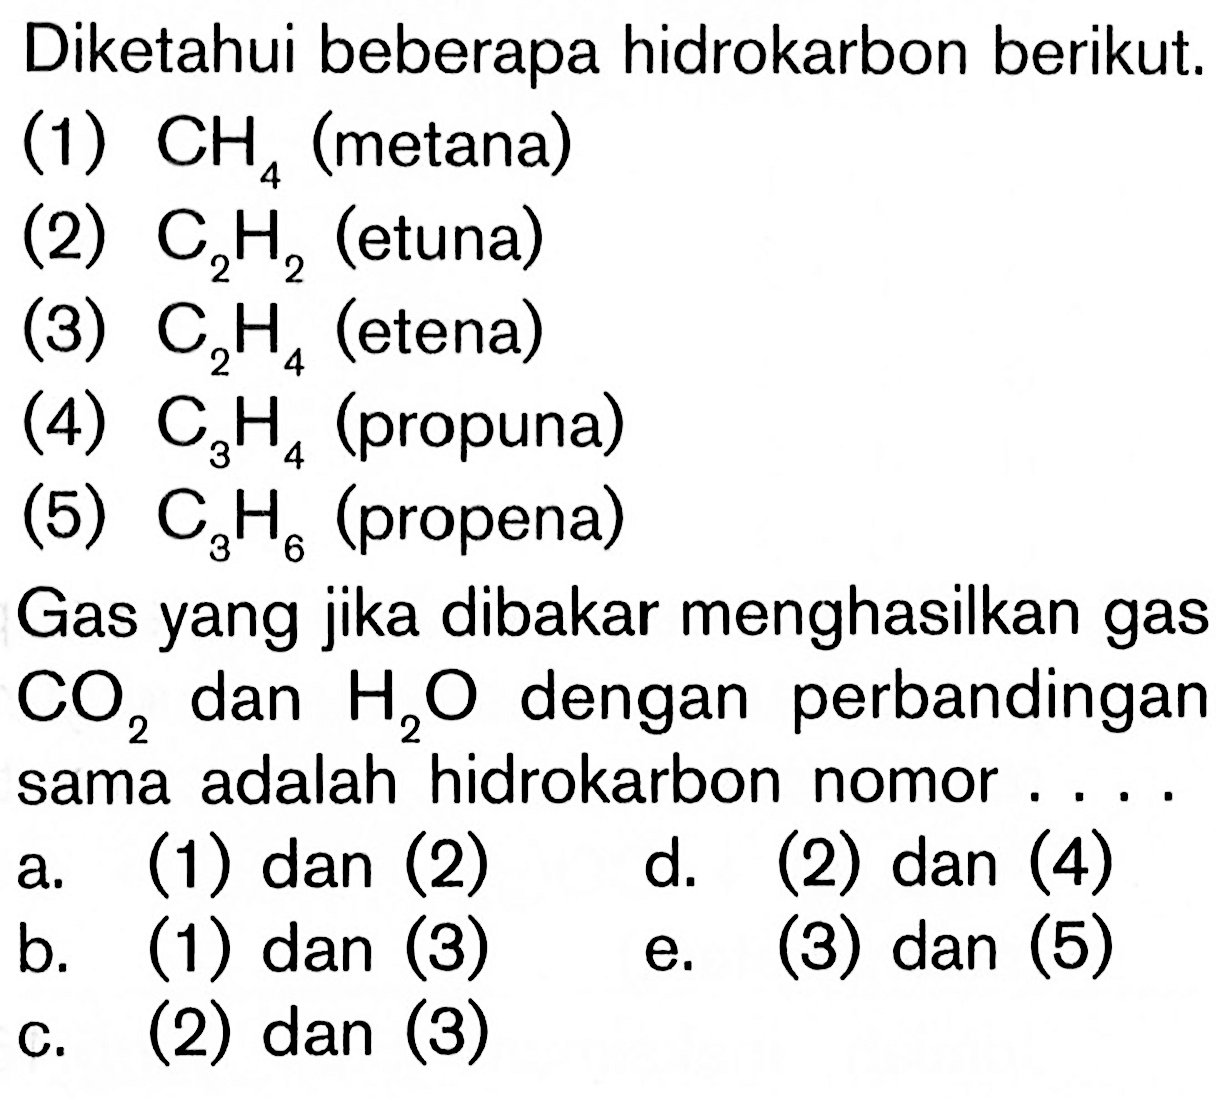 Diketahui beberapa hidrokarbon berikut. (1) CH 4 (metana) (2) C2H2 (etuna) (3) C2H4 (etena) (4) C3H4 (propuna) (5) C3H6 (propena) Gas yang jika dibakar menghasilkan gas CO2 dan H2O dengan perbandingan sama adalah hidrokarbon nomor ...